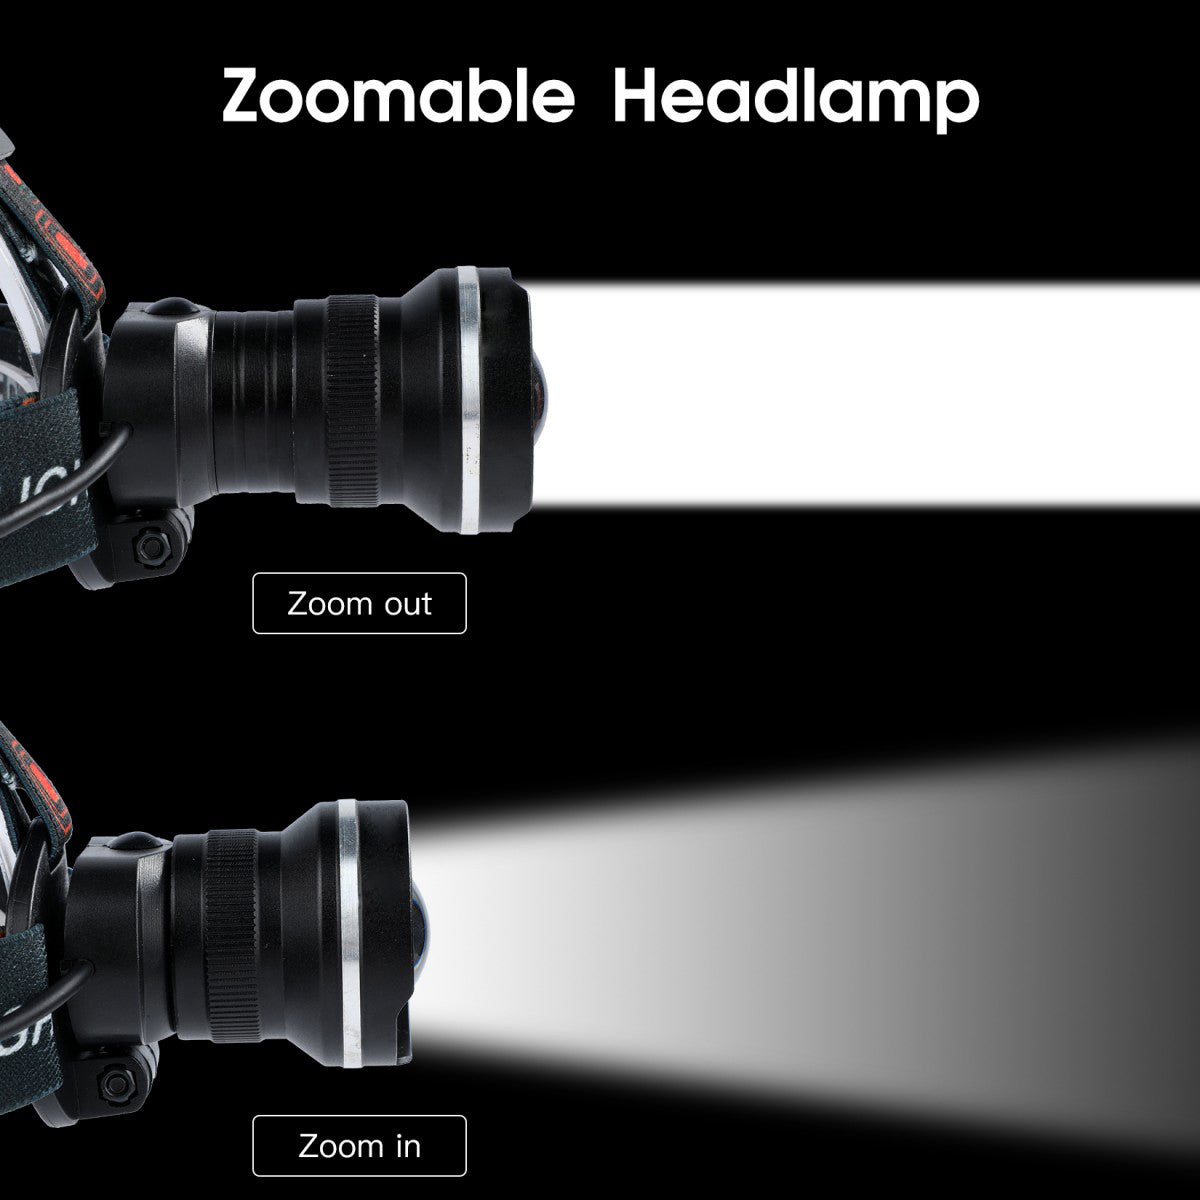 FandyFire 600 lumen T6 white LED headlight, 4-speed zoom, IPX4 waterproof